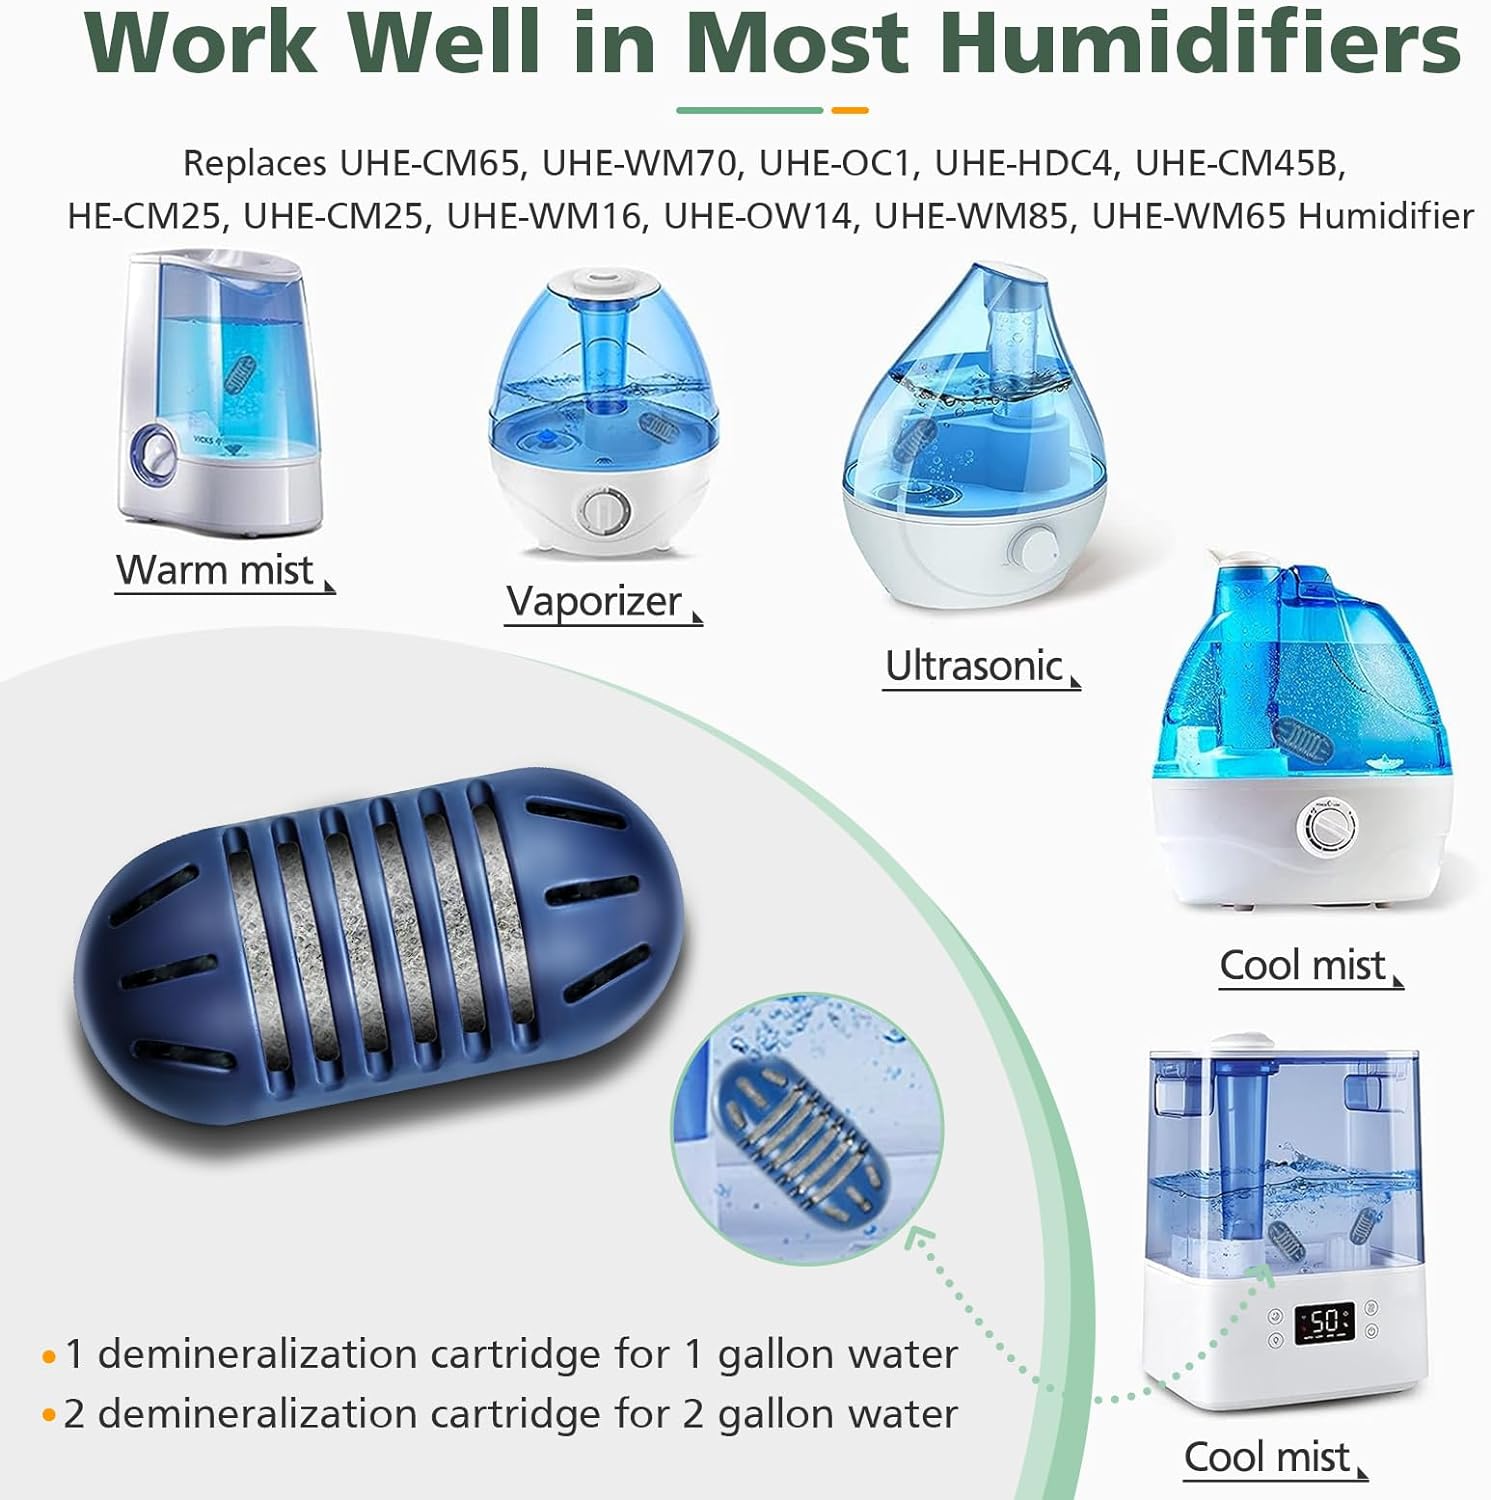 Paquete de 12 cartuchos de desmineralización compatibles con humidificadores